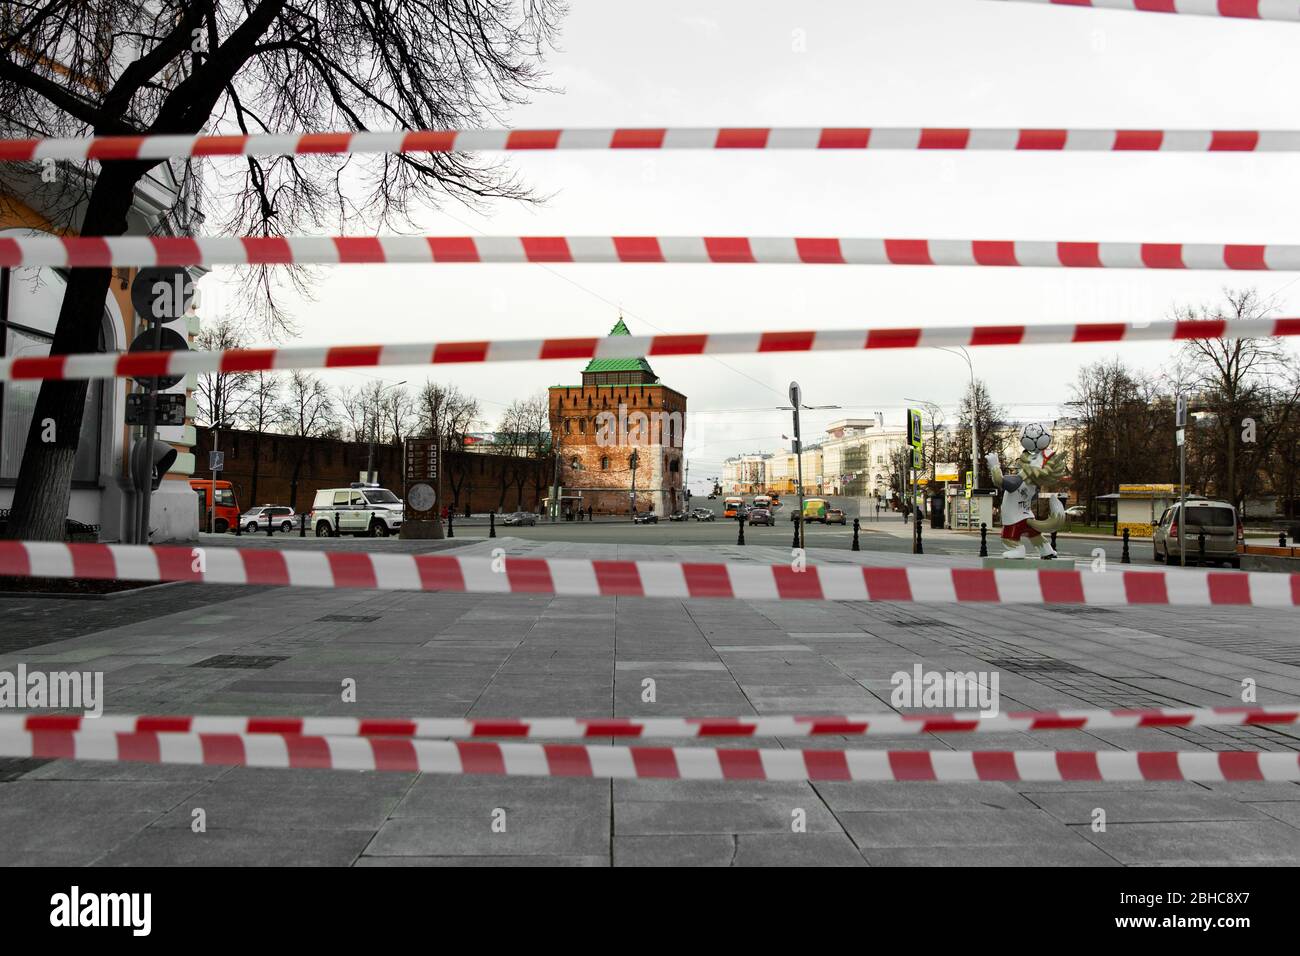 Rusia, Nizhny Novgorod - 23 de mayo de 2020: Minin y Pozharsky Plaza sin gente. Bloqueo de carreteras. Foto de stock